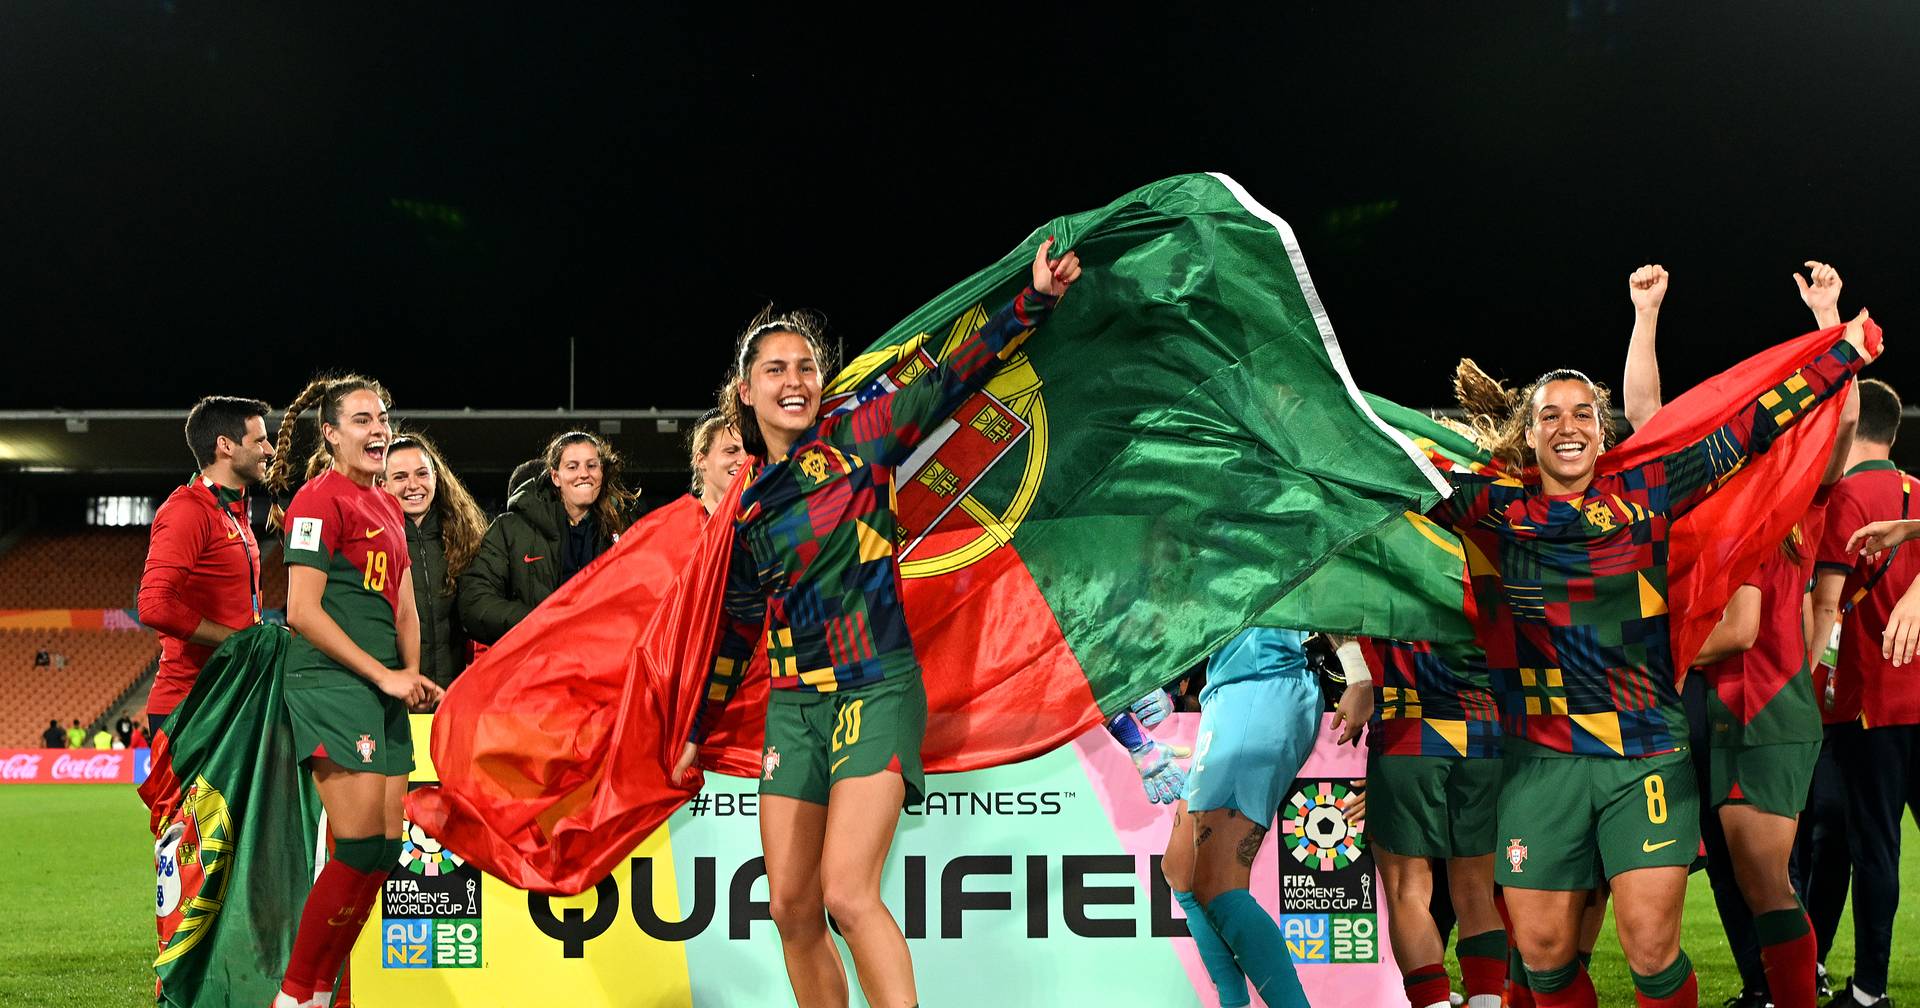 Mundial deu impulso decisivo a Portugal - Seleção Feminina